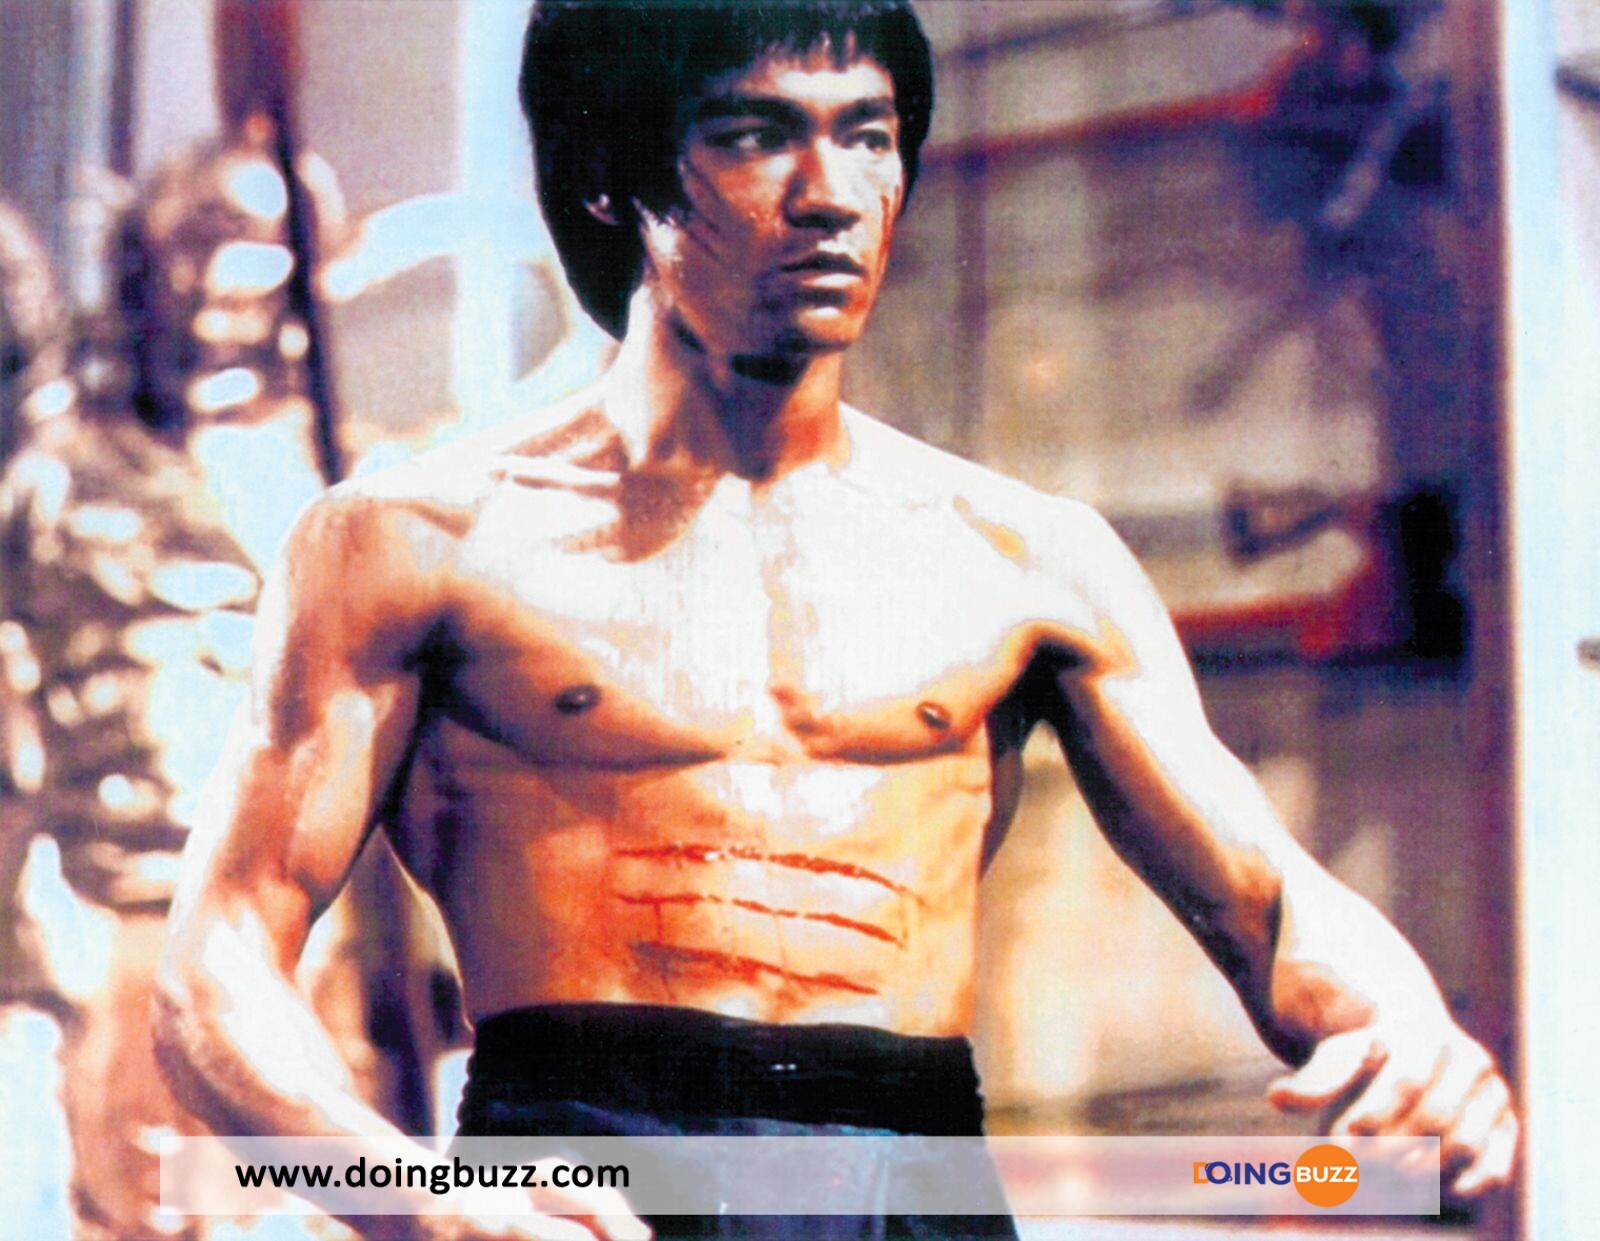 Bruce Lee Doingbuzz